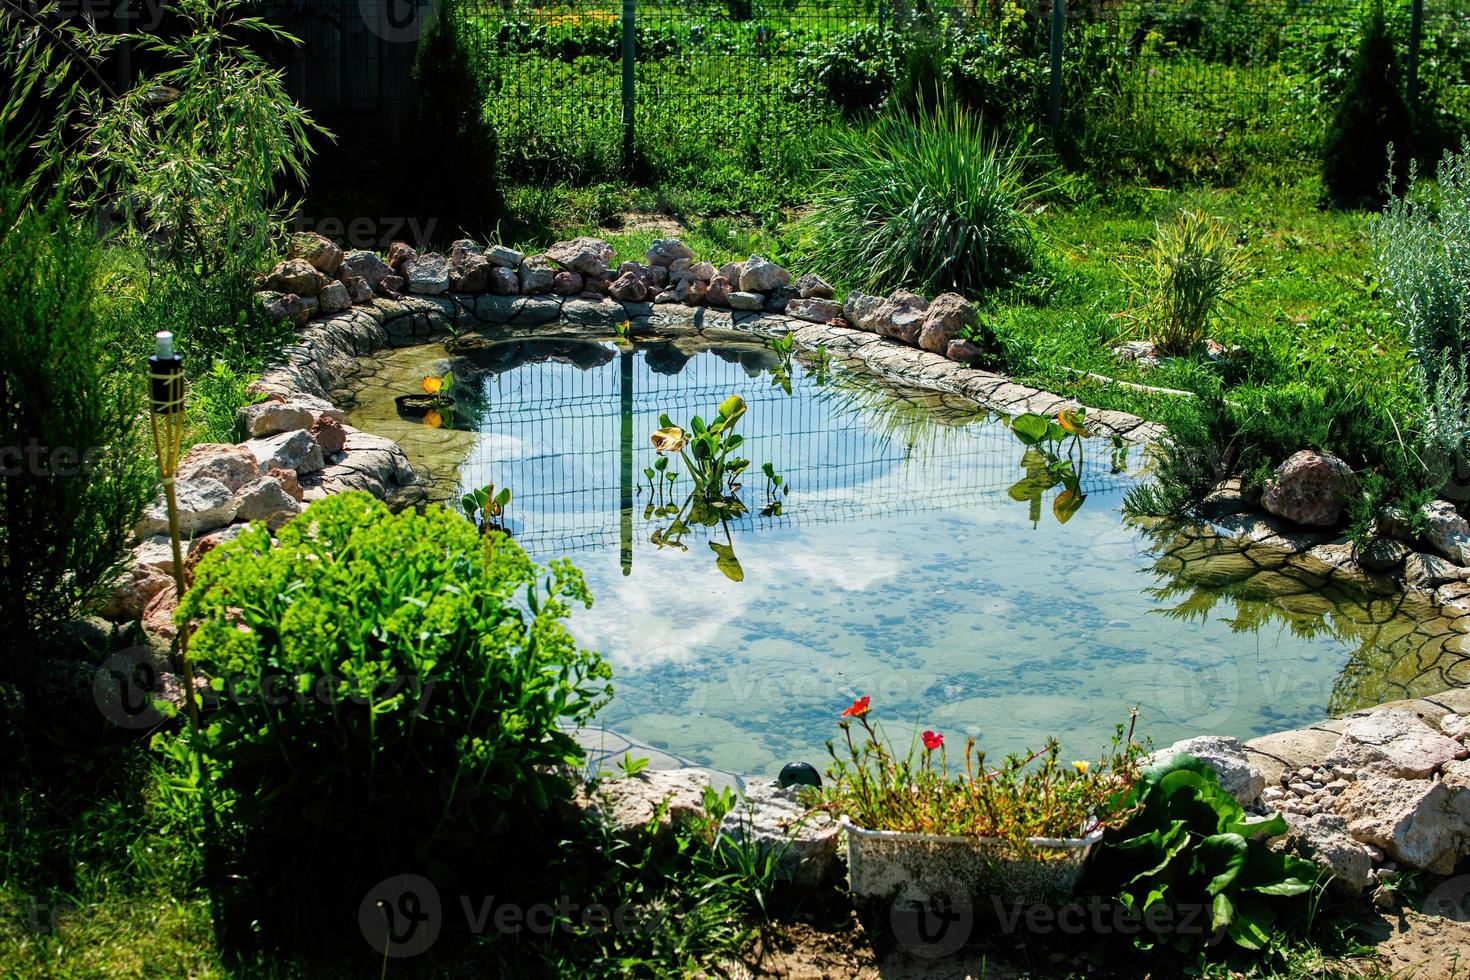 piccolo laghetto in giardino come elemento di design paesaggistico. foto